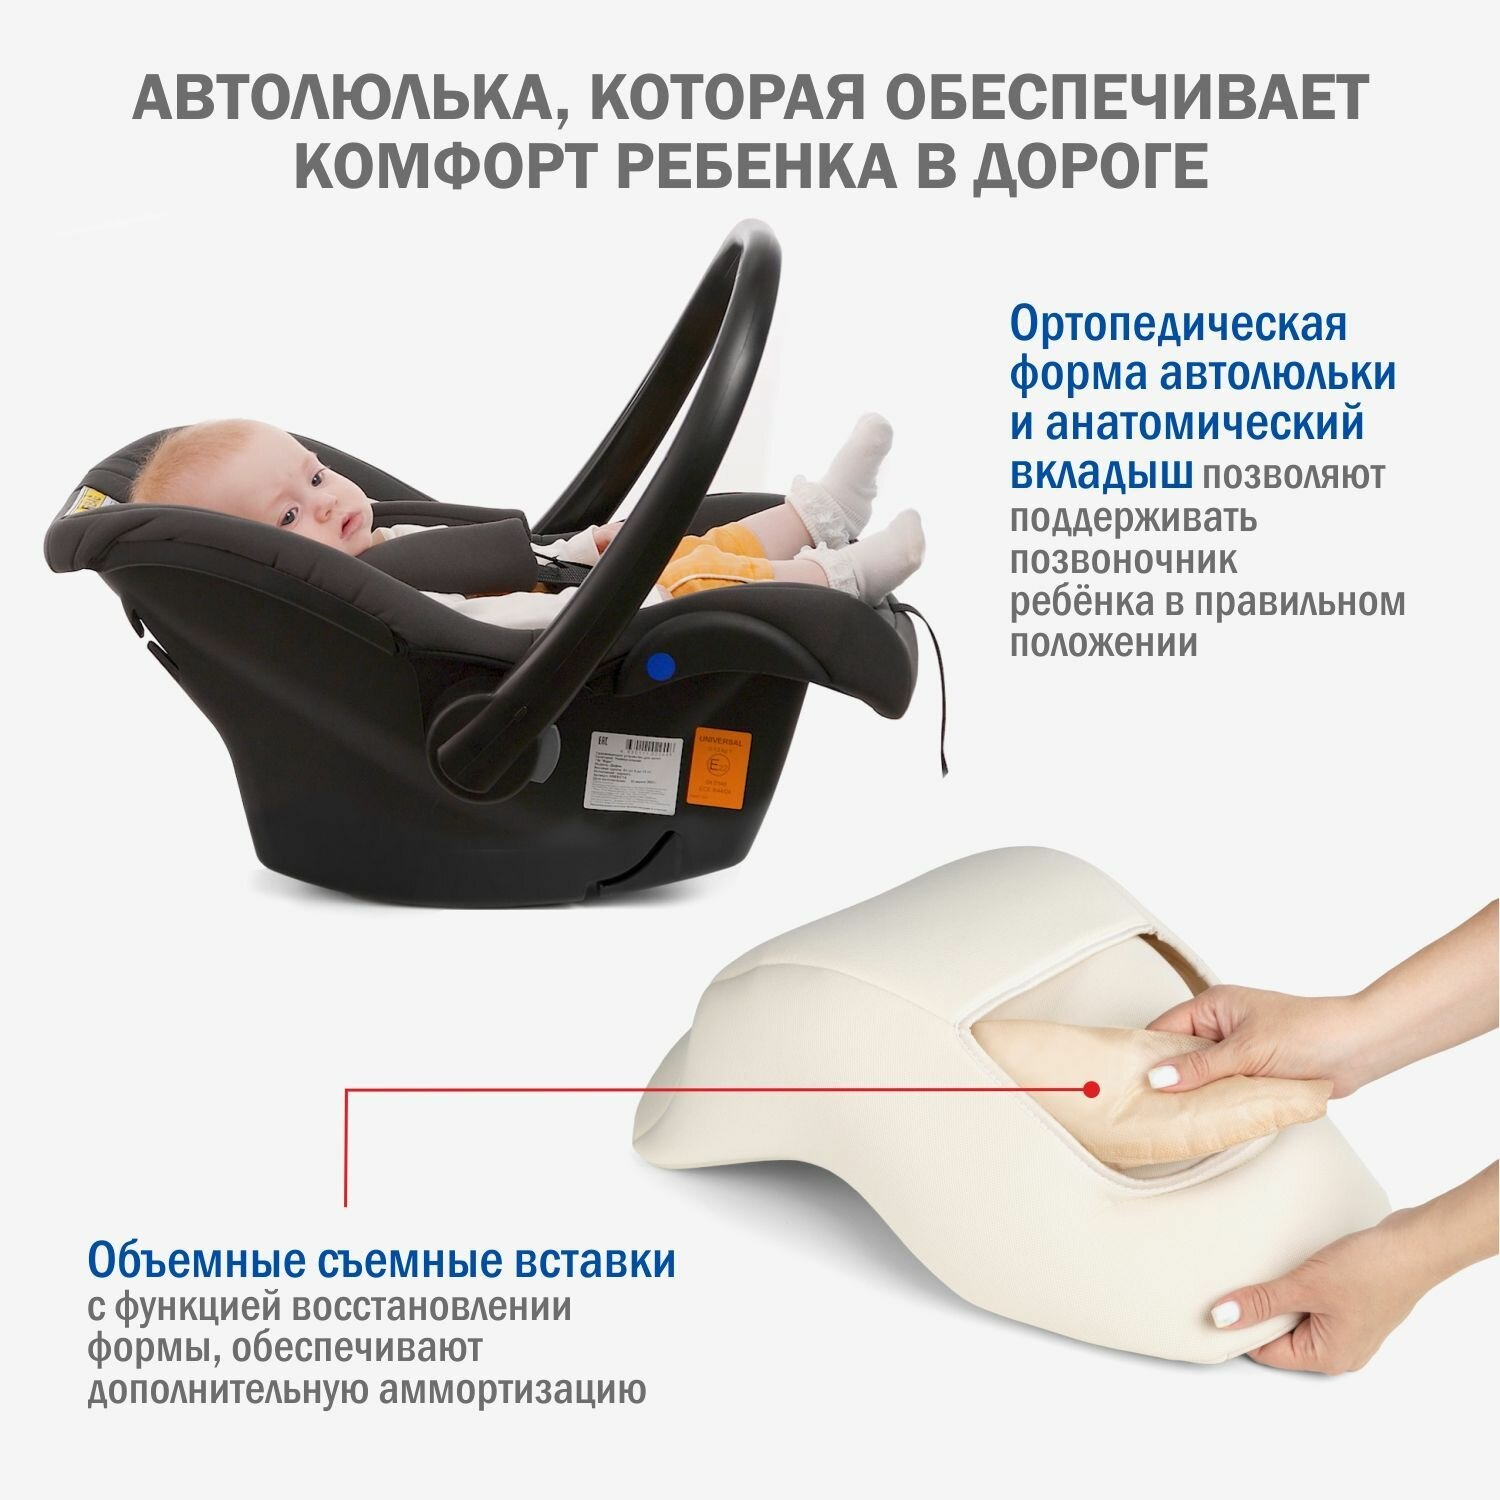 Автокресло детское, автолюлька для новорожденных Siger Дафни от 0 до 13 кг, цвет мокко